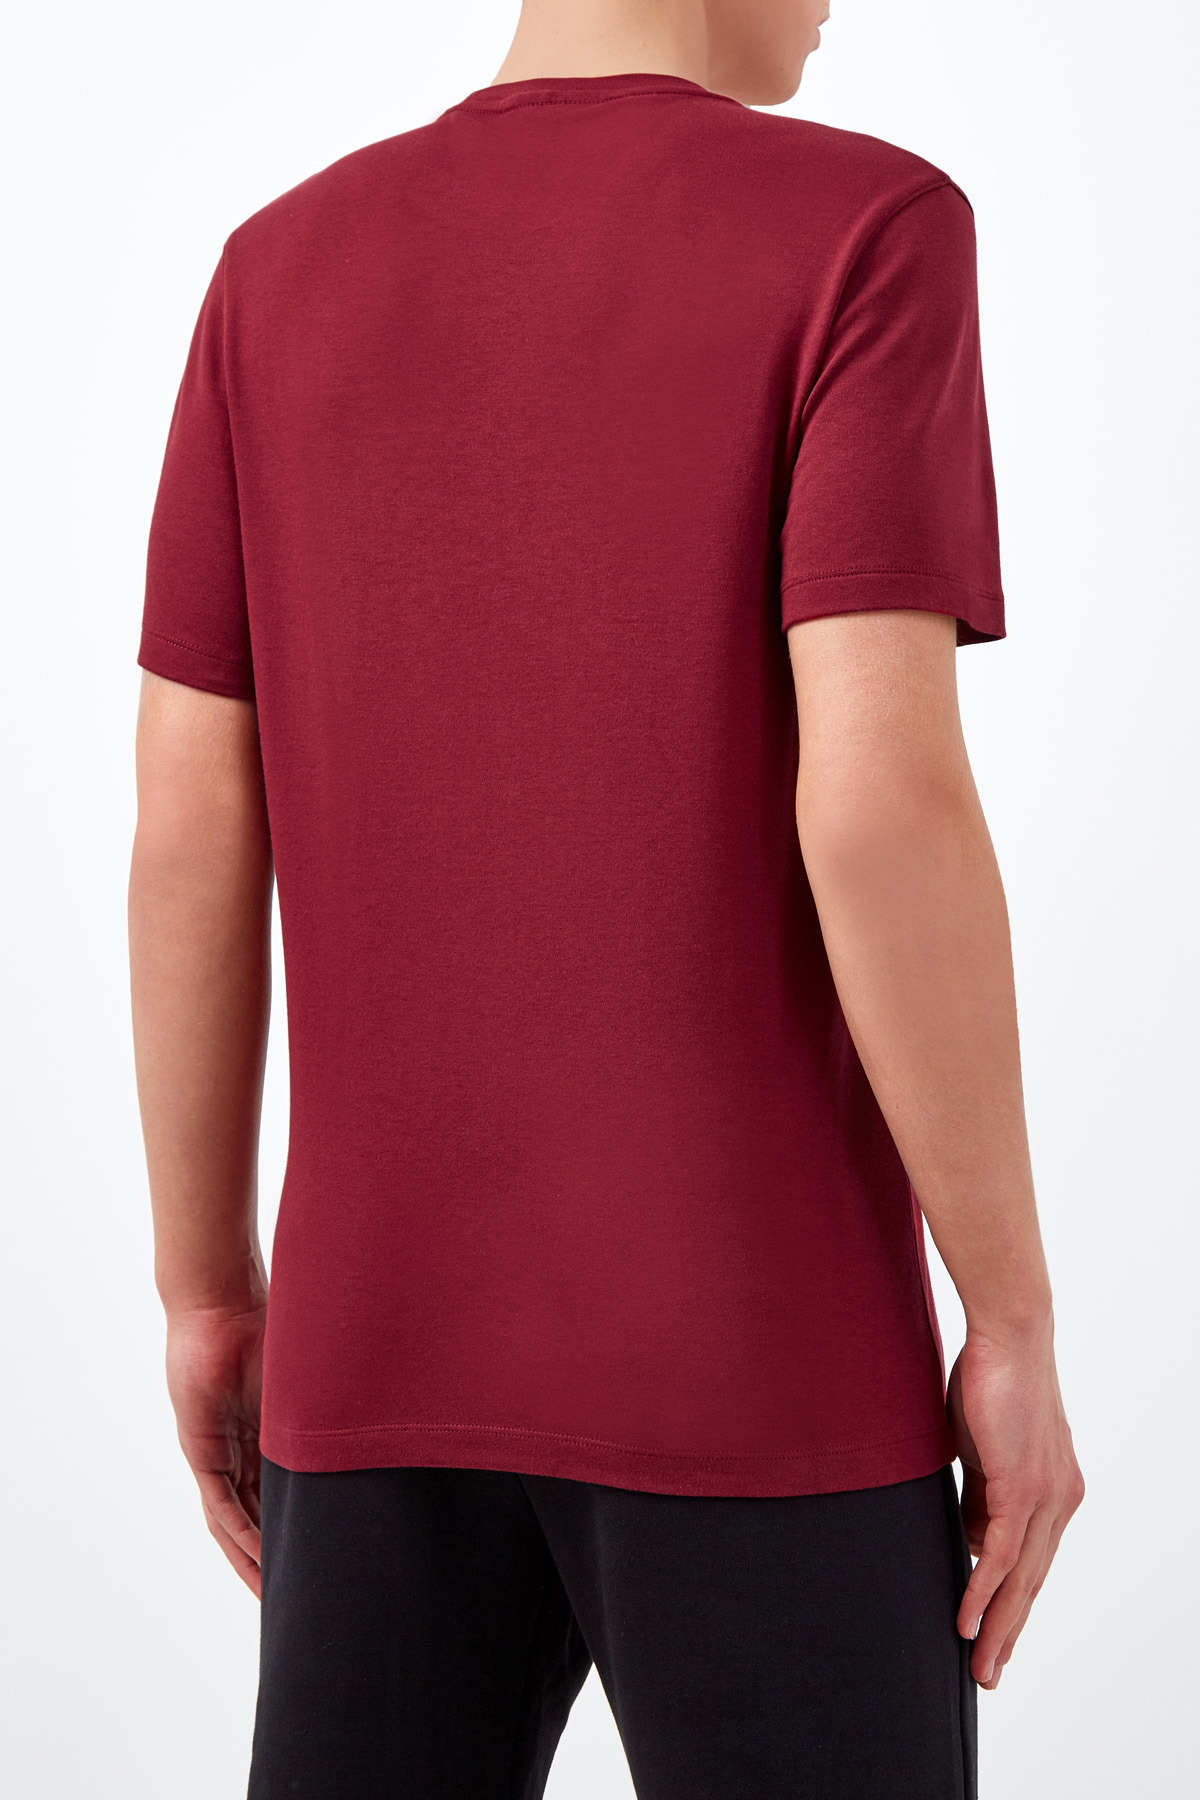 Однотонная футболка с вышитым логотипом MICHAEL KORS, цвет бордовый, размер XL - фото 4